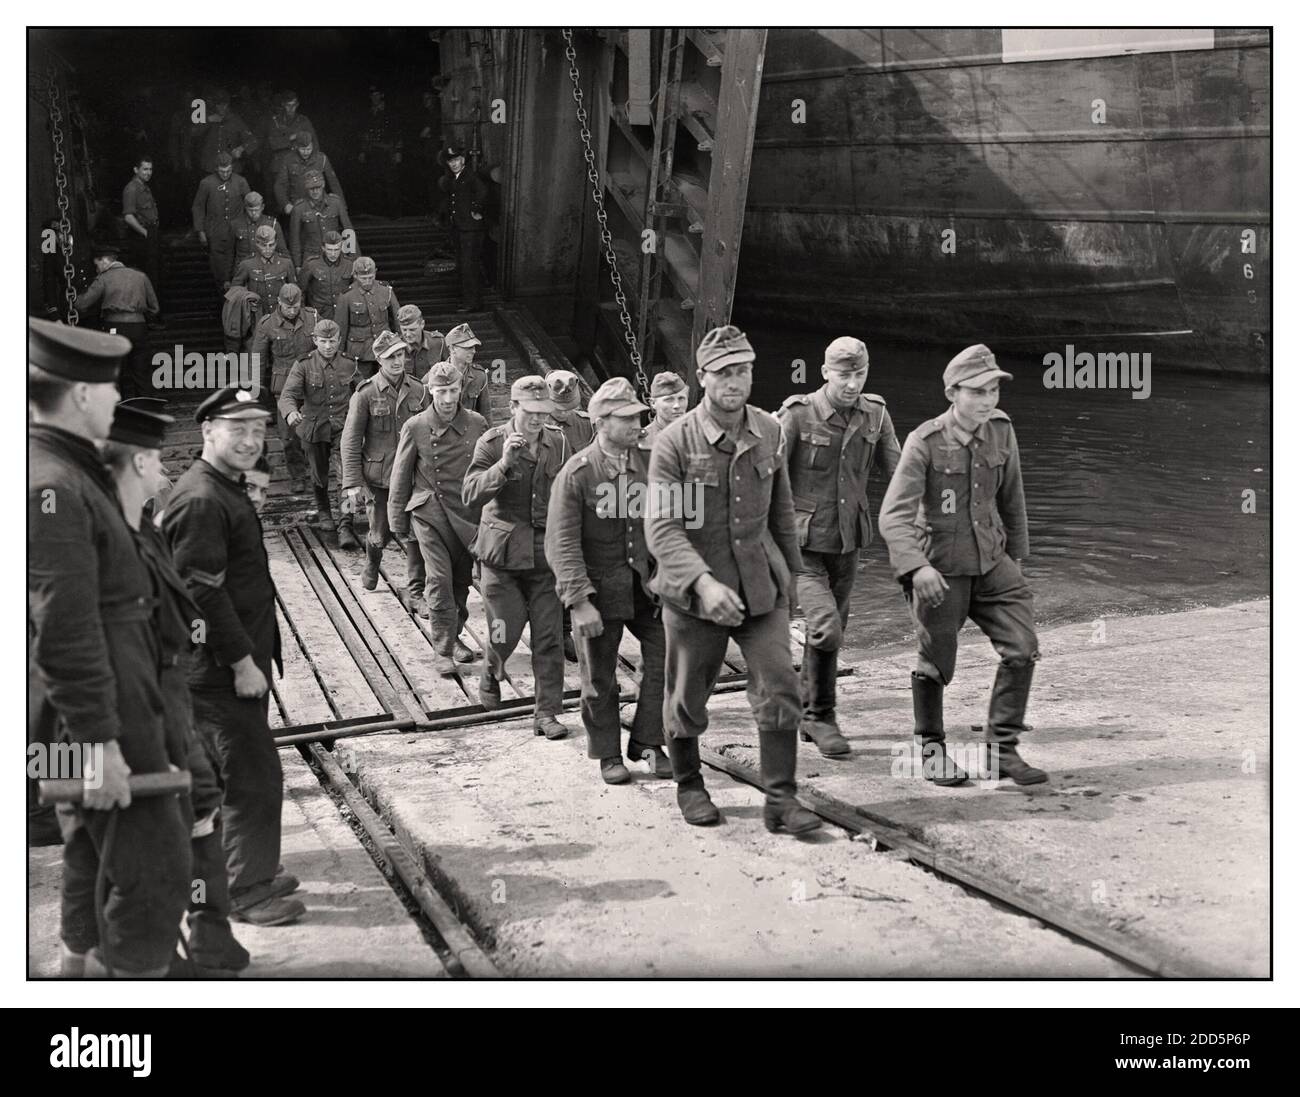 D-Day WW2 i prigionieri Wehrmacht dell'esercito tedesco che arrivano nel Regno Unito attraverso la Royal Navy durante la seconda guerra mondiale - operazione Overlord (sbarco in Normandia), Giugno 1944 seconda guerra mondiale parte di un gruppo di trecento prigionieri di guerra tedeschi dalla Normandia che lasciano una Royal Navy LST a Southampton Docks. Data 1944 Foto Stock